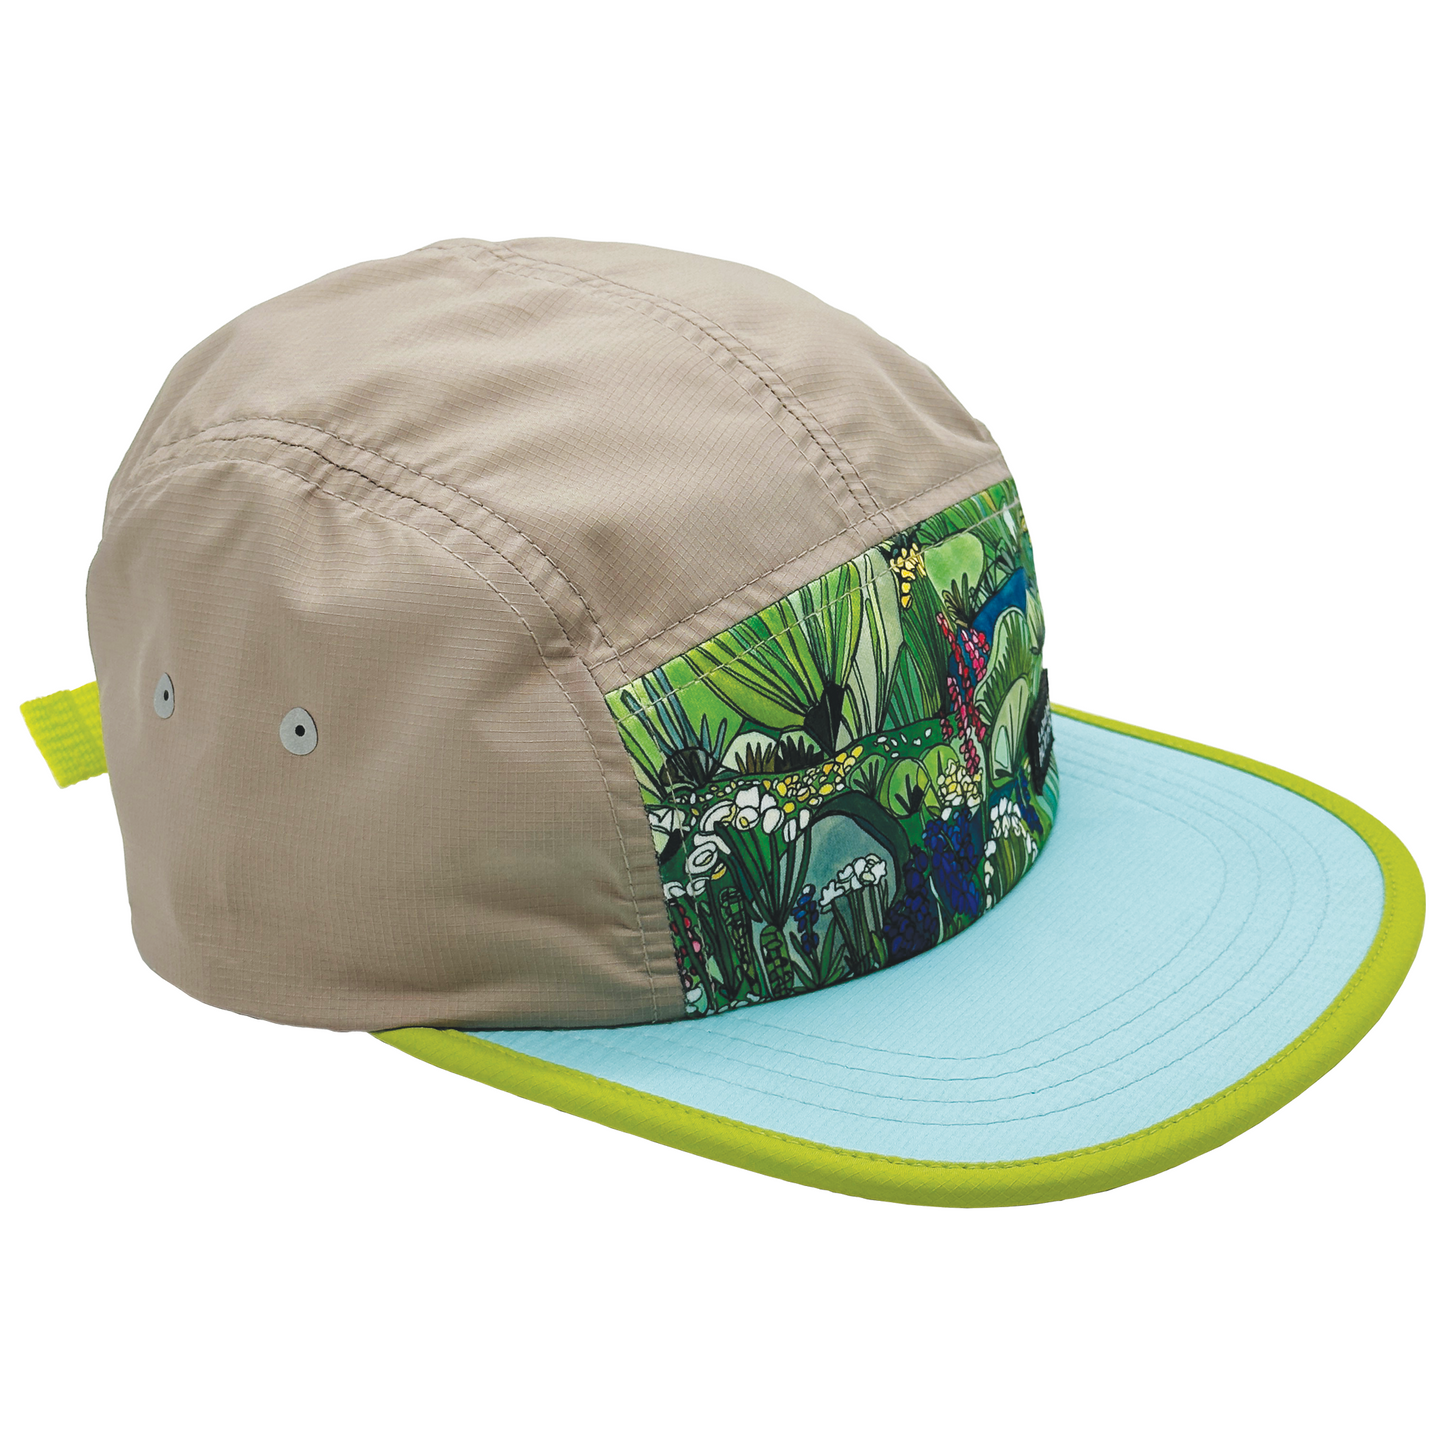 Sagebrush and Wildflowers  Travel and Running Hat | Aqua and Green